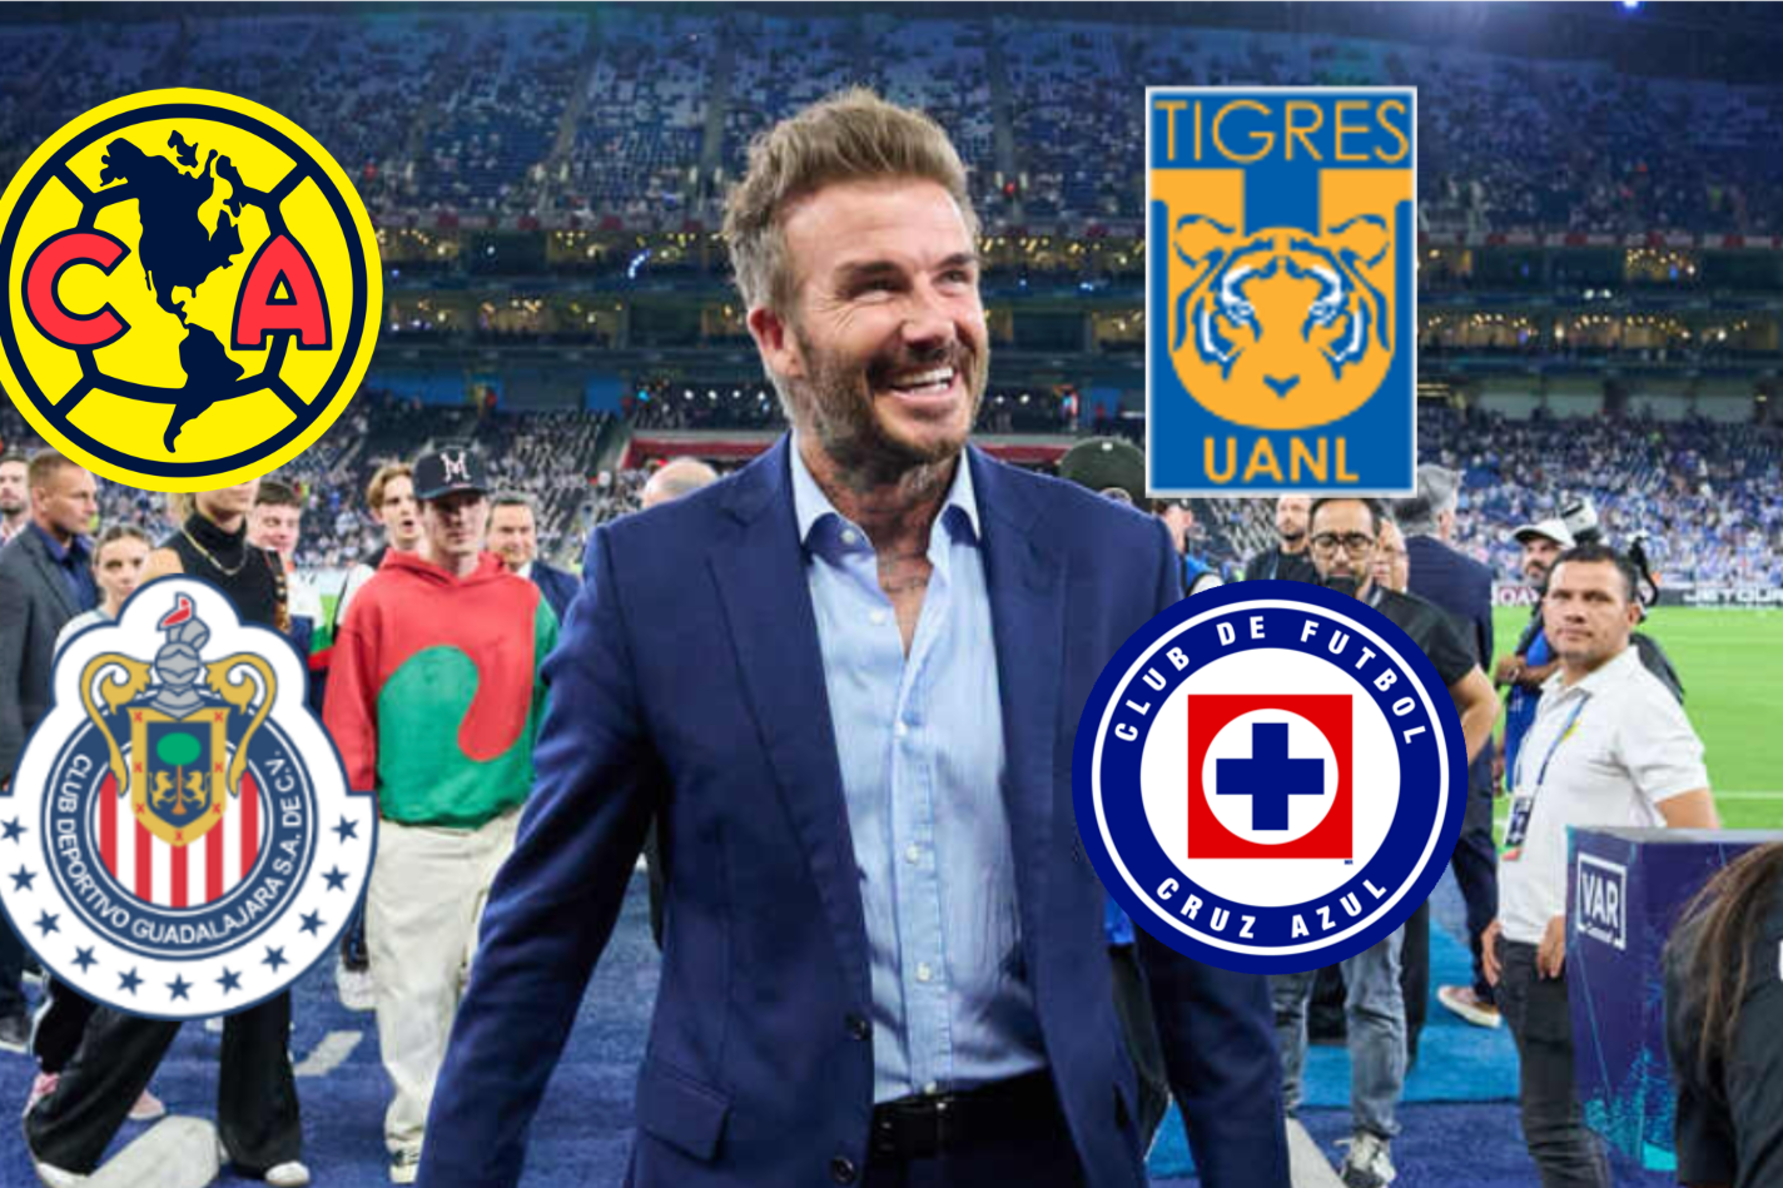 El club mexicano que conocía David Beckham antes de llegar a México, no es Rayados